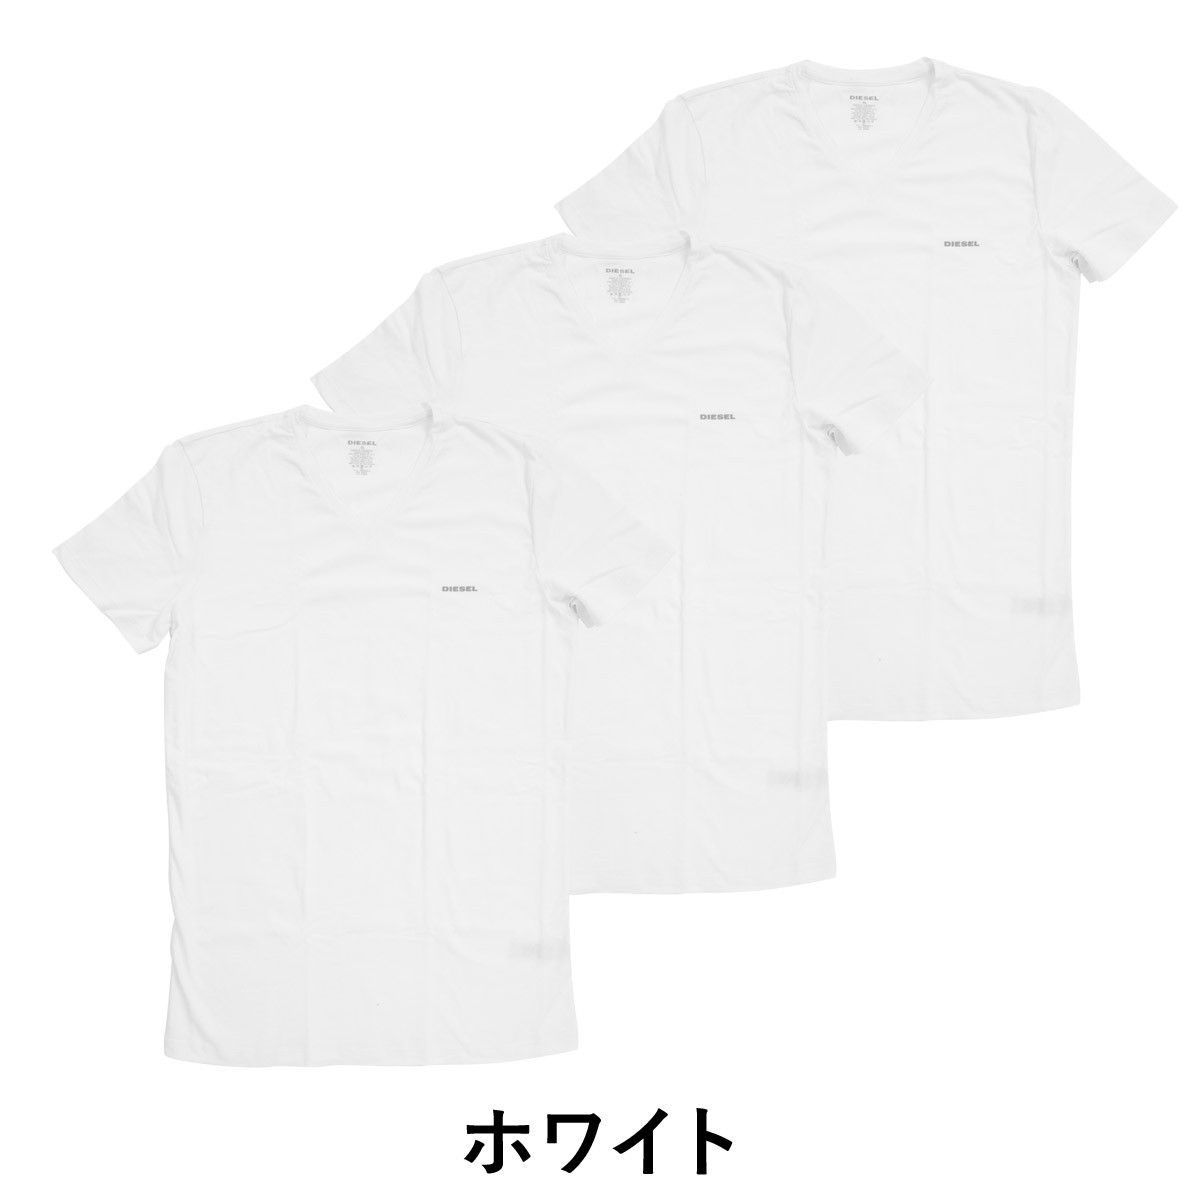 ディーゼル DIESEL メンズ Tシャツ 半袖 3枚セット ブランド 無地 父の日